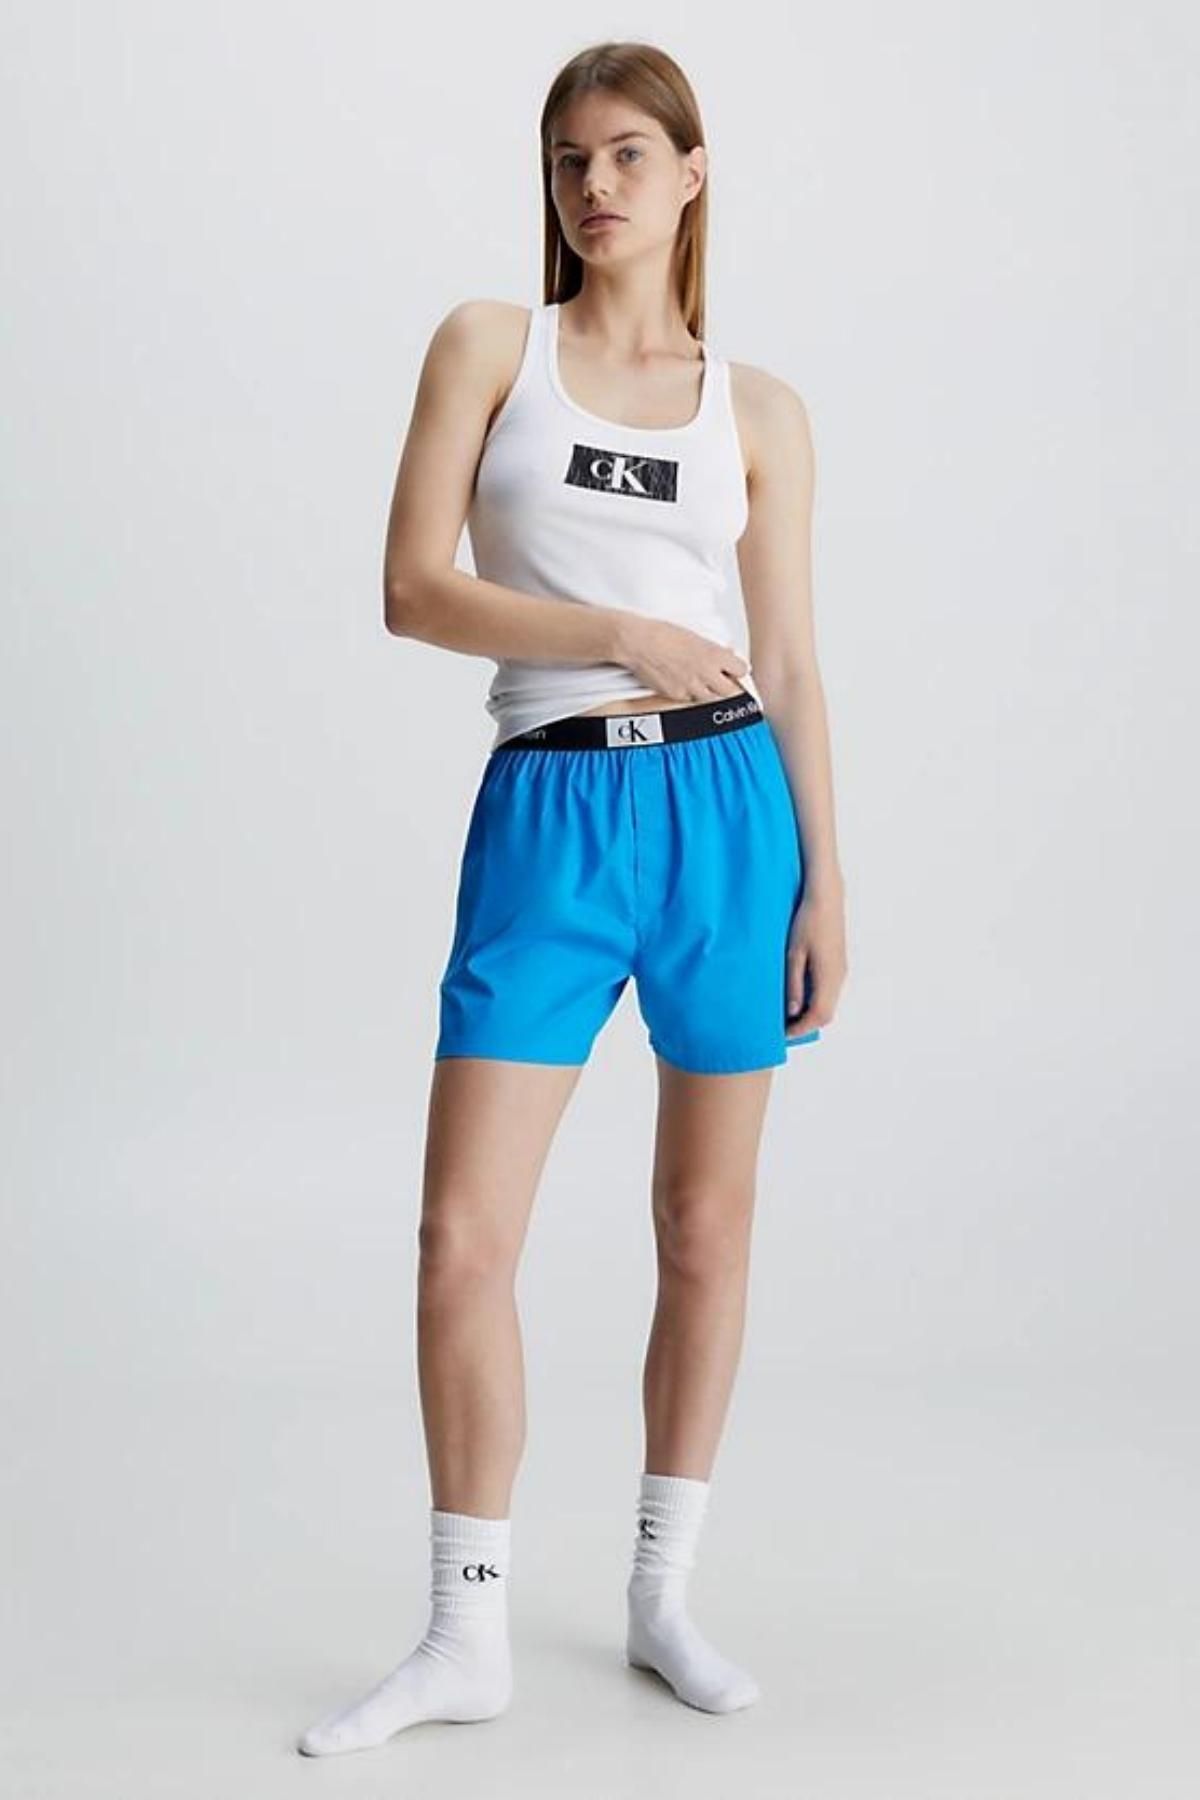 Calvin Klein Kadın Marka Logolu Elastik Bantlı Organik Pamuklu Pijama Seti Beyaz-mavi Eşofman Takımı 000qs6937e-